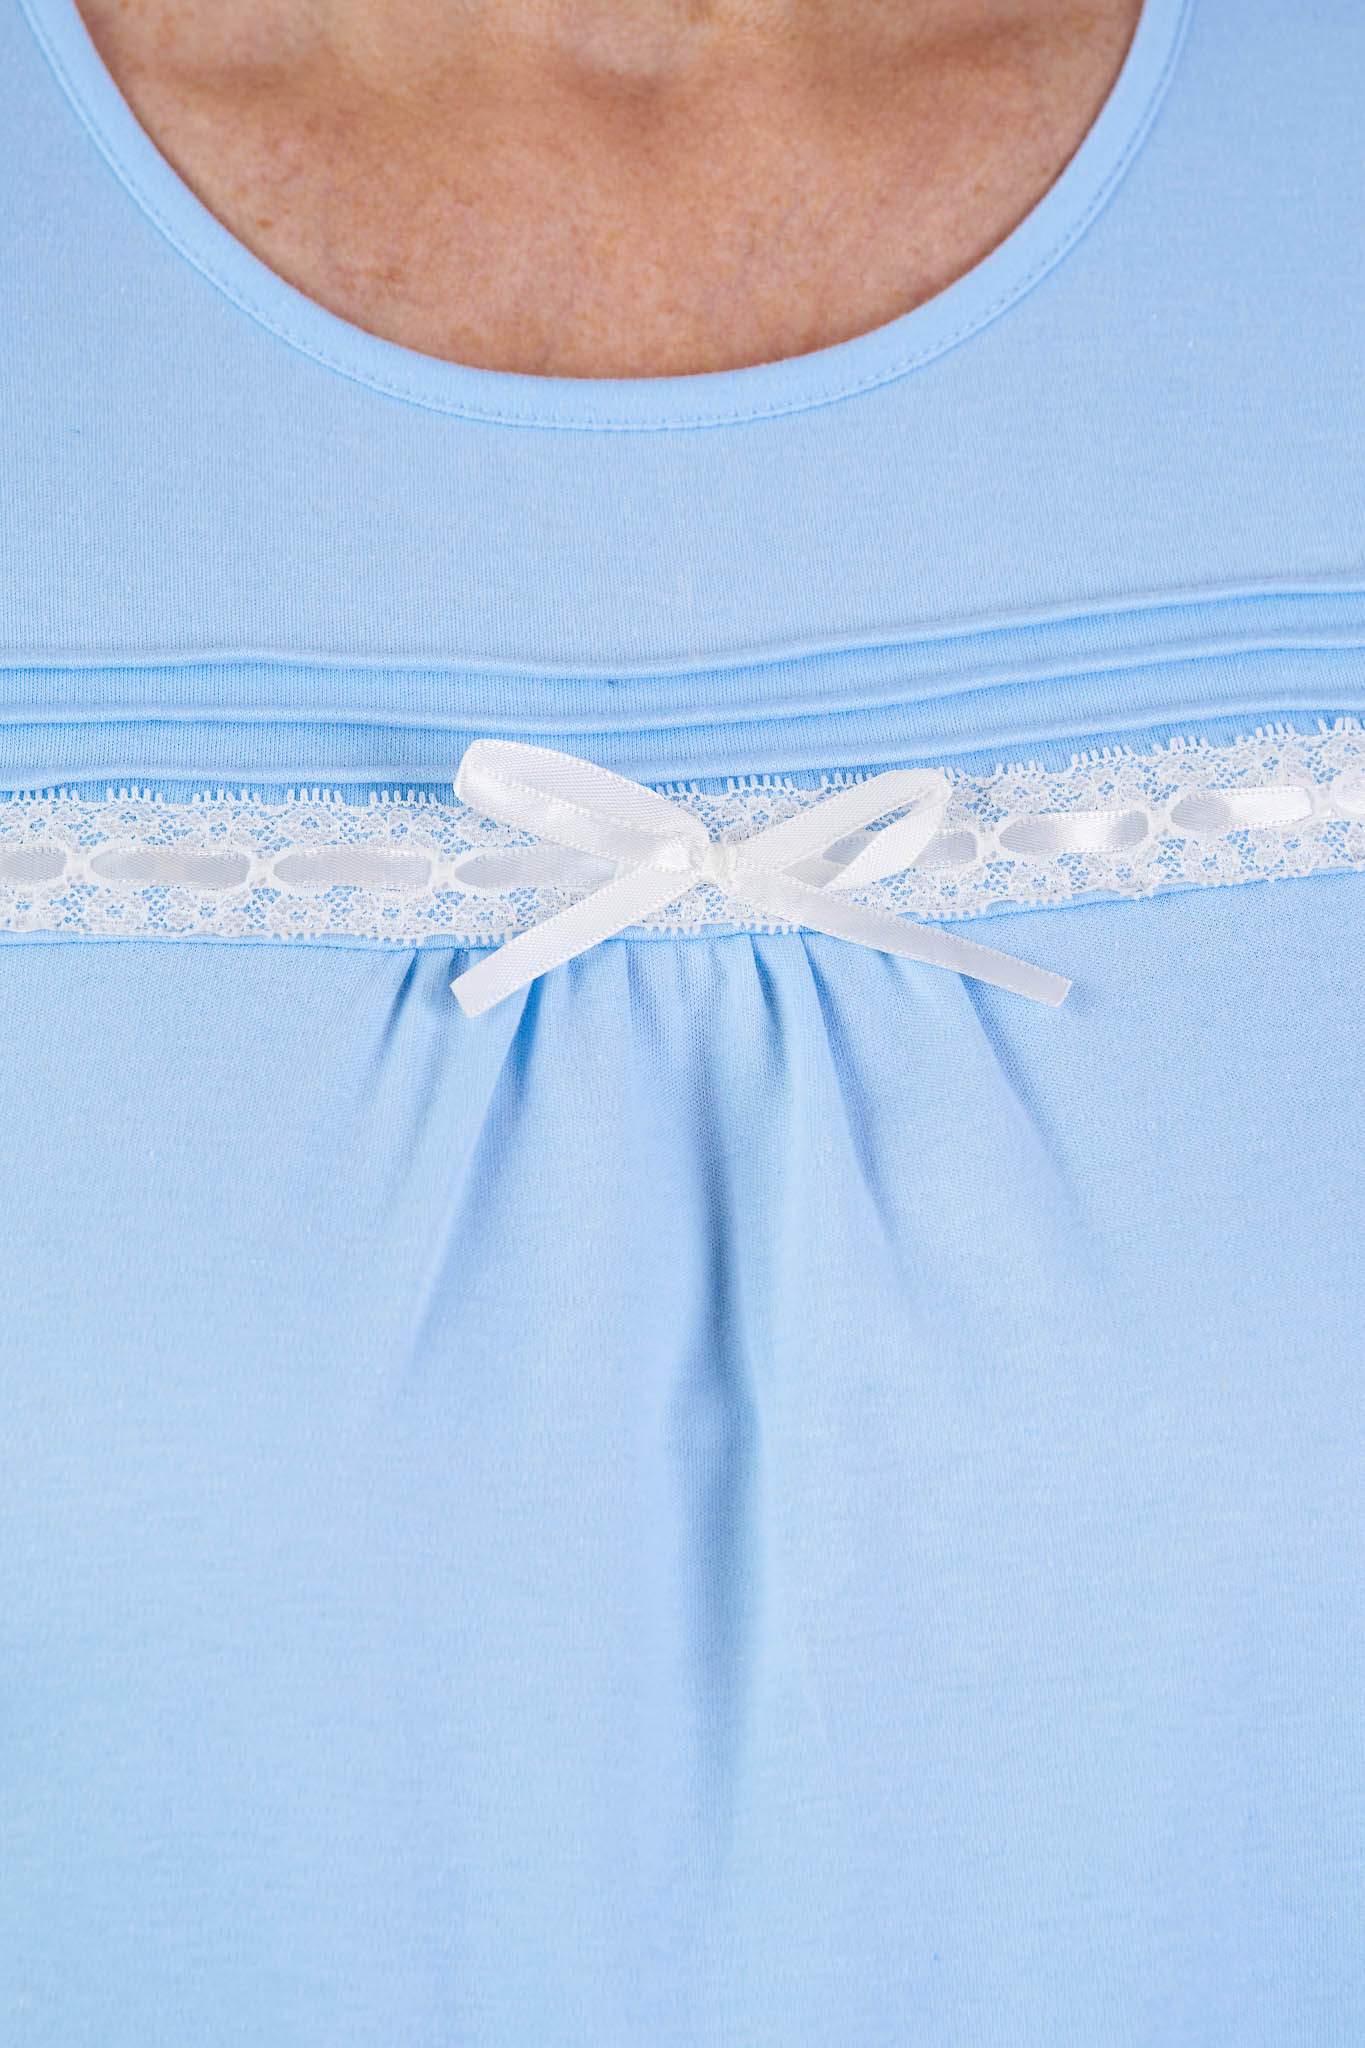 Robe de nuit pour Femmes - Bleue | Olivia | Vêtements Adaptés